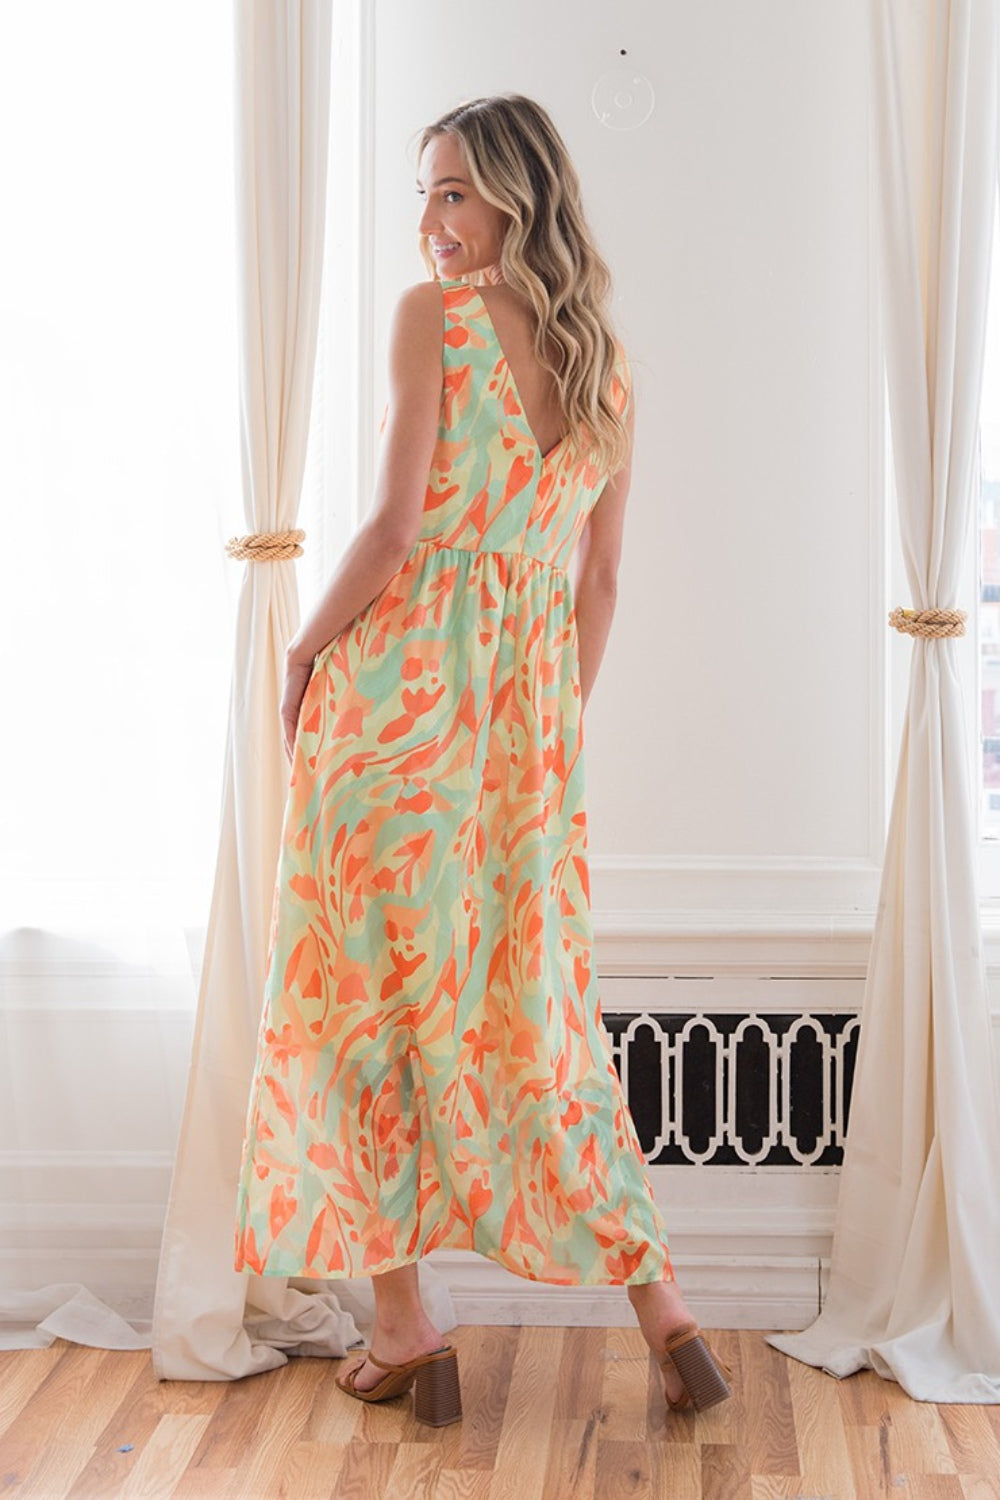 Sew In Love Printed V-Neck Sleeveless Dress - SELFTRITSS